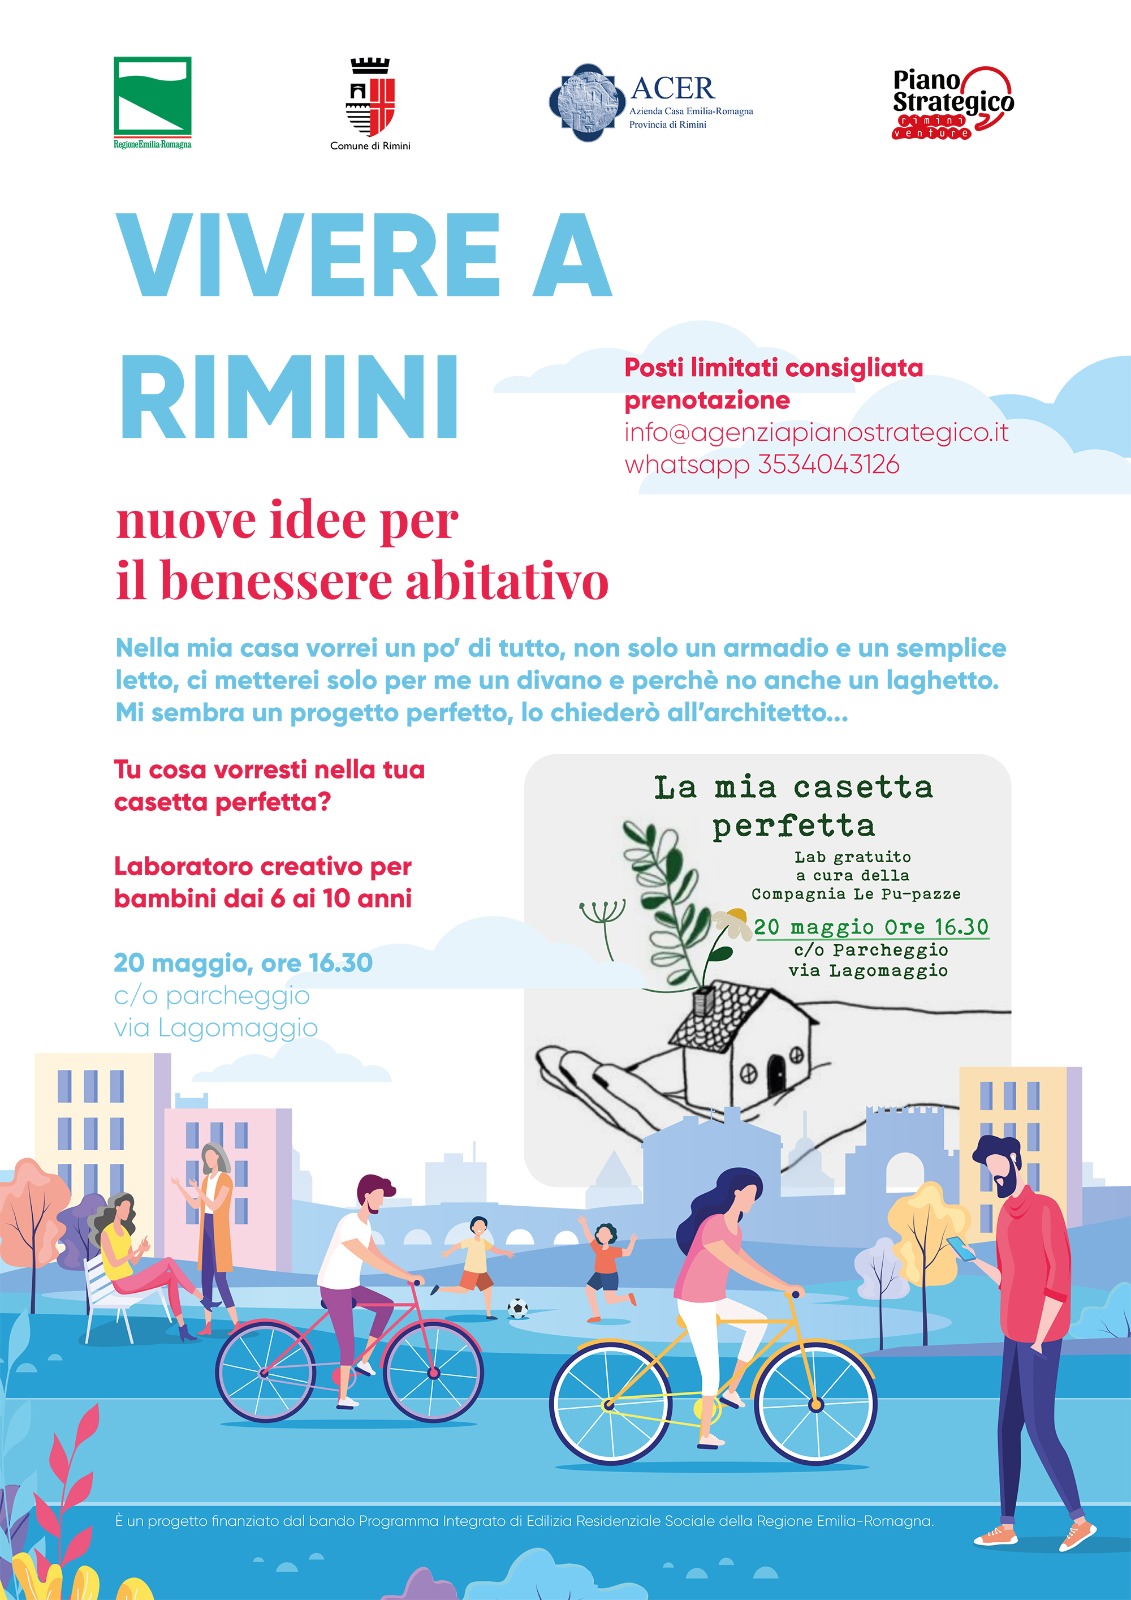 “Vivere a Rimini: nuove idee per il benessere abitativo”